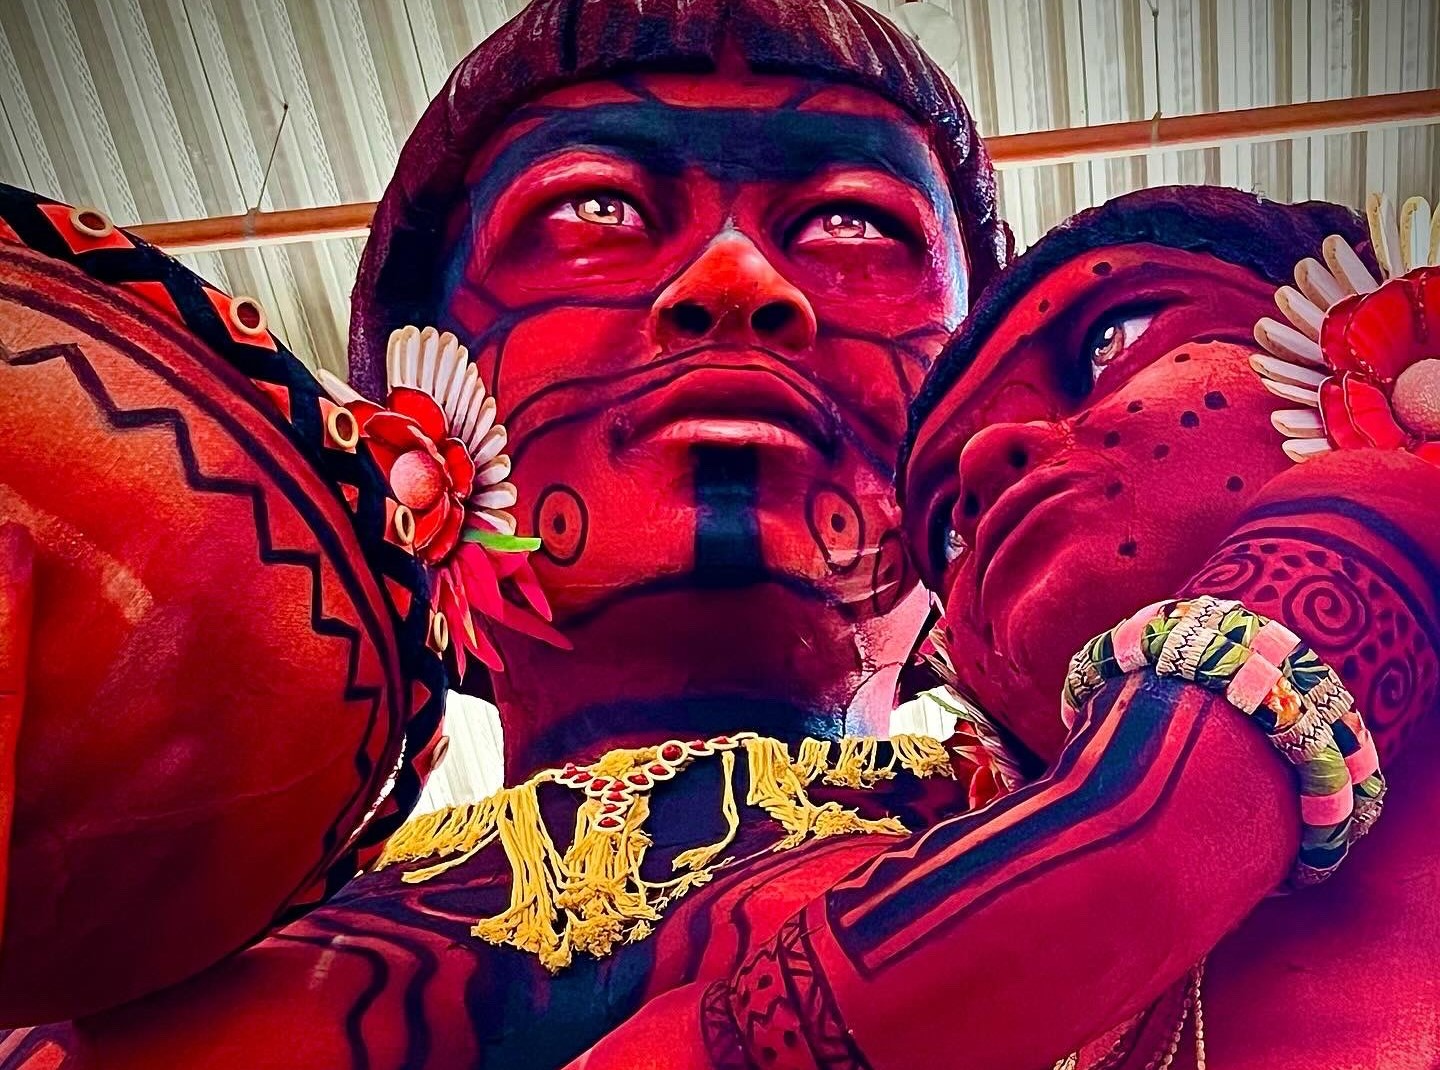 Alegoria com Yanomamis para o desfile do Salgueiro: refrão tem termo indígena - Ya temí xoa - que significa "ainda estamos vivos" mas ameaças à sobrevivência do povo permanecem um ano após operação do governo federal (Foto: Divulgação / Salgueiro)